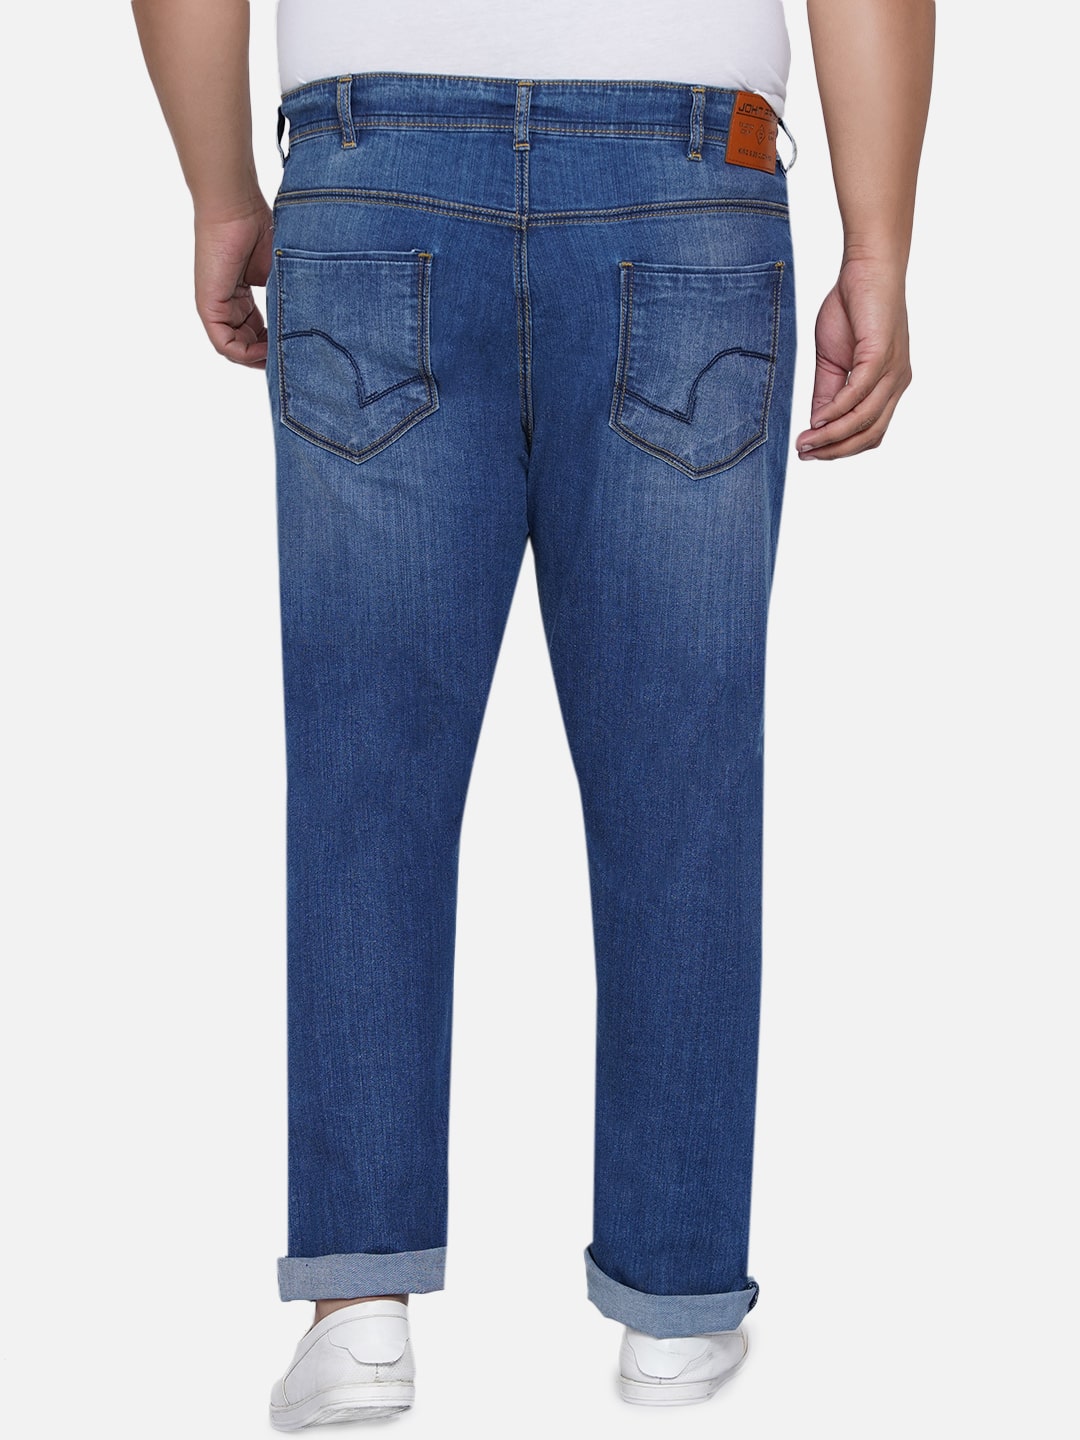 bottomwear/jeans/EJPJ25012/ejpj25012-5.jpg